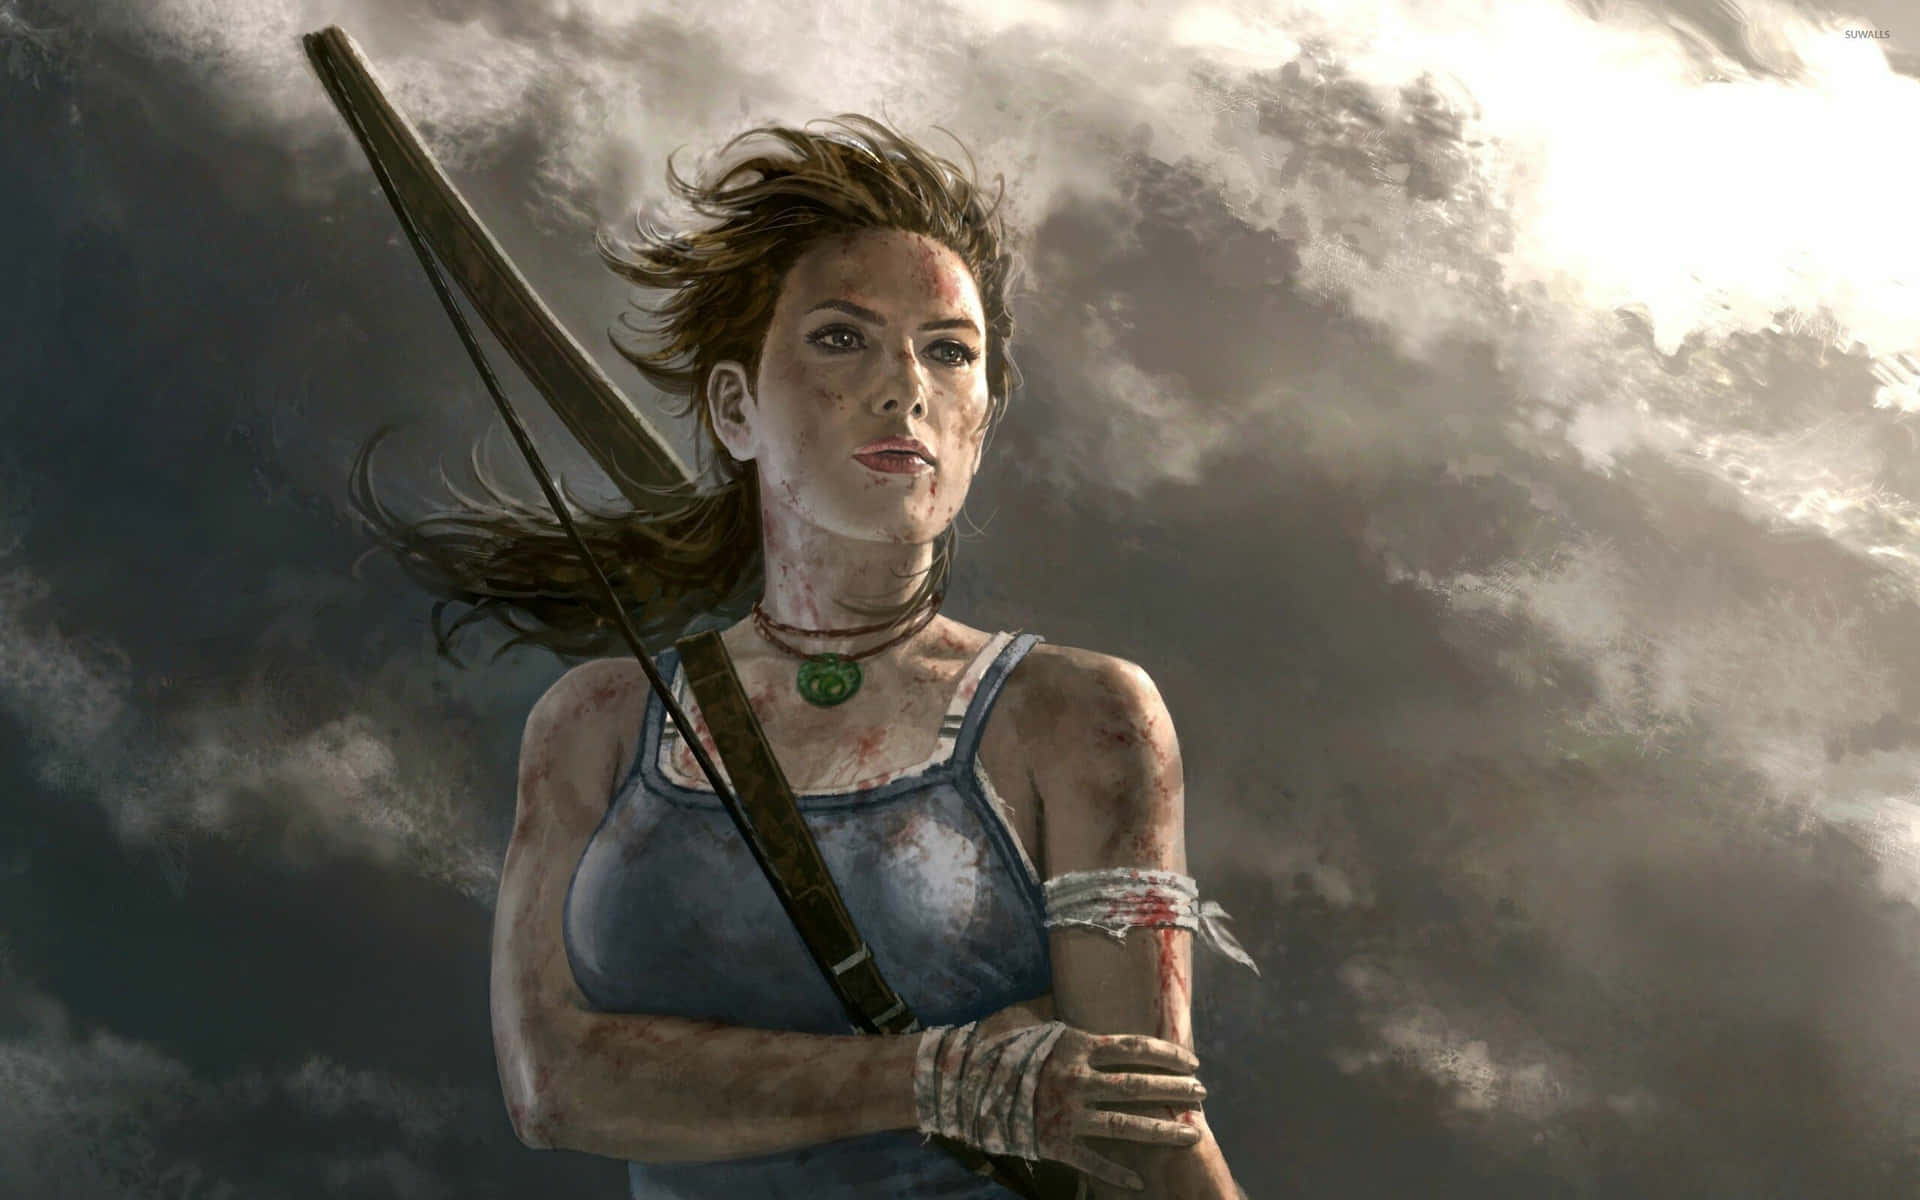 Lara Croft Determined Adventurer Wallpaper